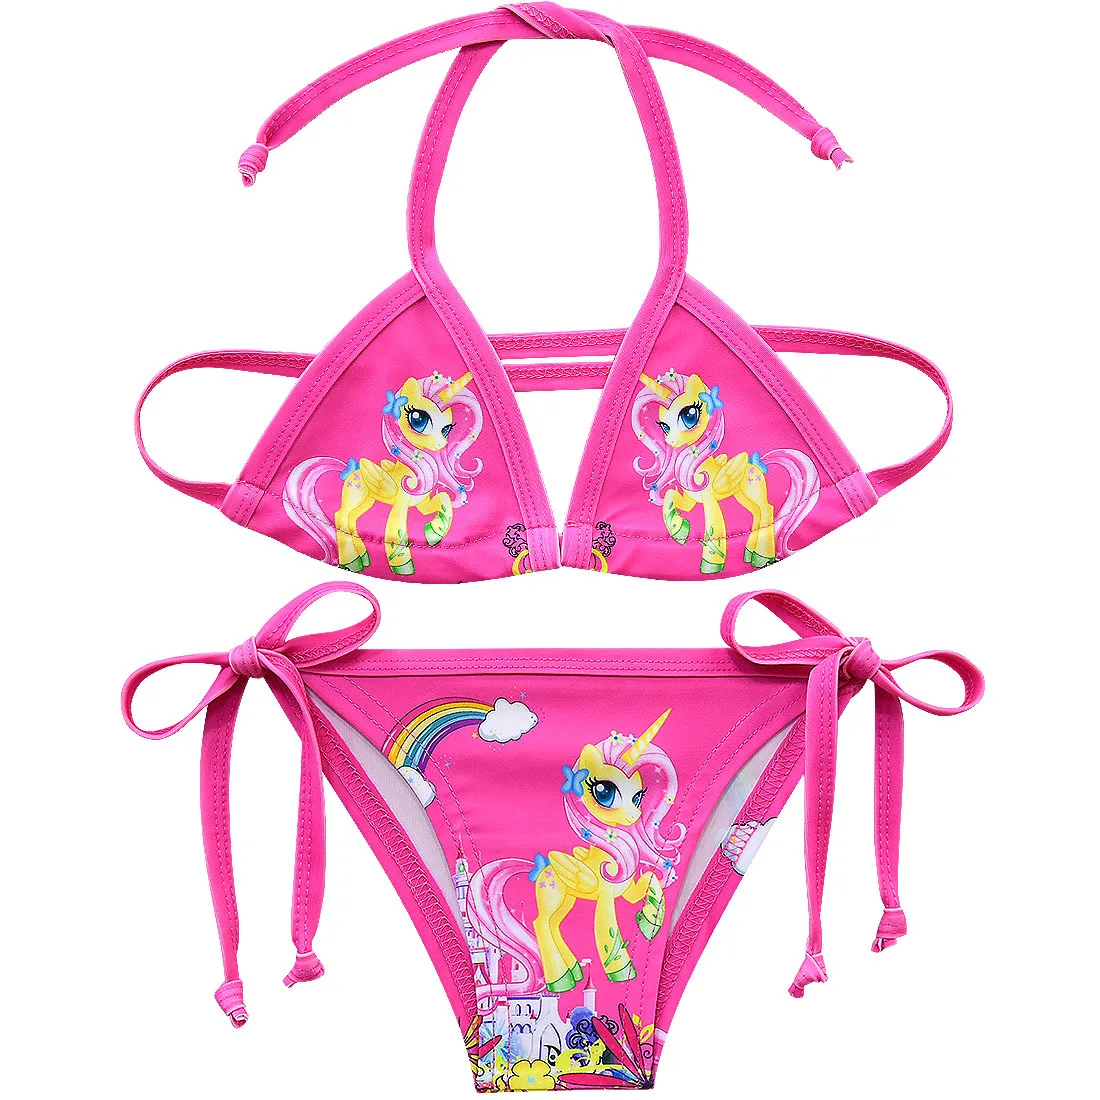 New Unicorn Girls Swimsuit Two Piece 3-12 Years Children's Swimwear Unicorn Bikini Set For Girl Swimming Beachwear G48-8073 - Цвет: G48-8066-Rose